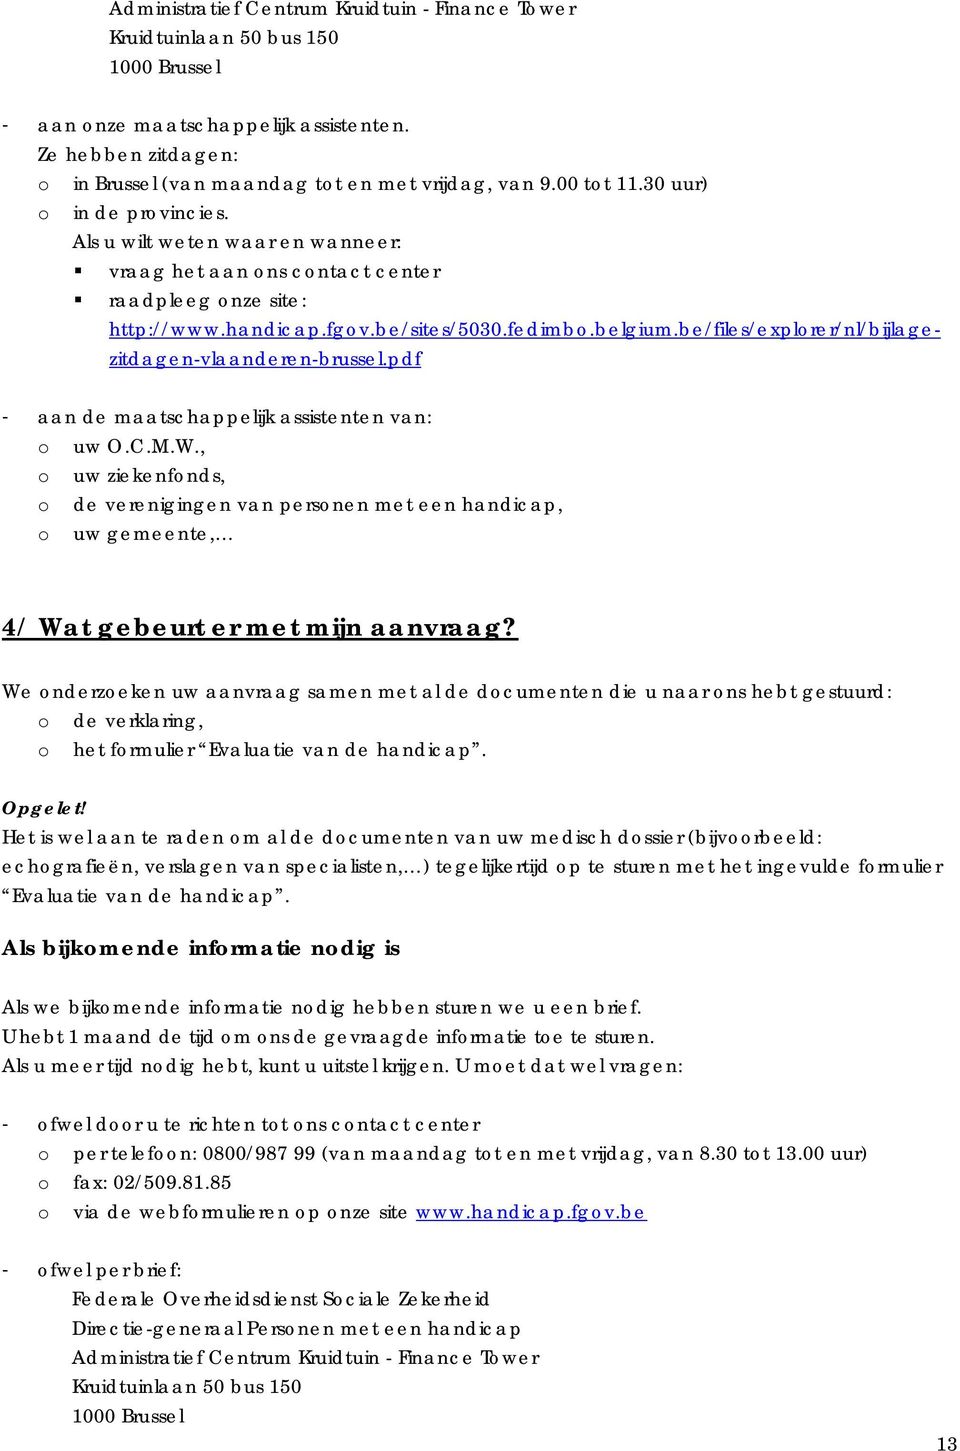 be/files/explorer/nl/bijlagezitdagen-vlaanderen-brussel.pdf - aan de maatschappelijk assistenten van: o uw O.C.M.W.